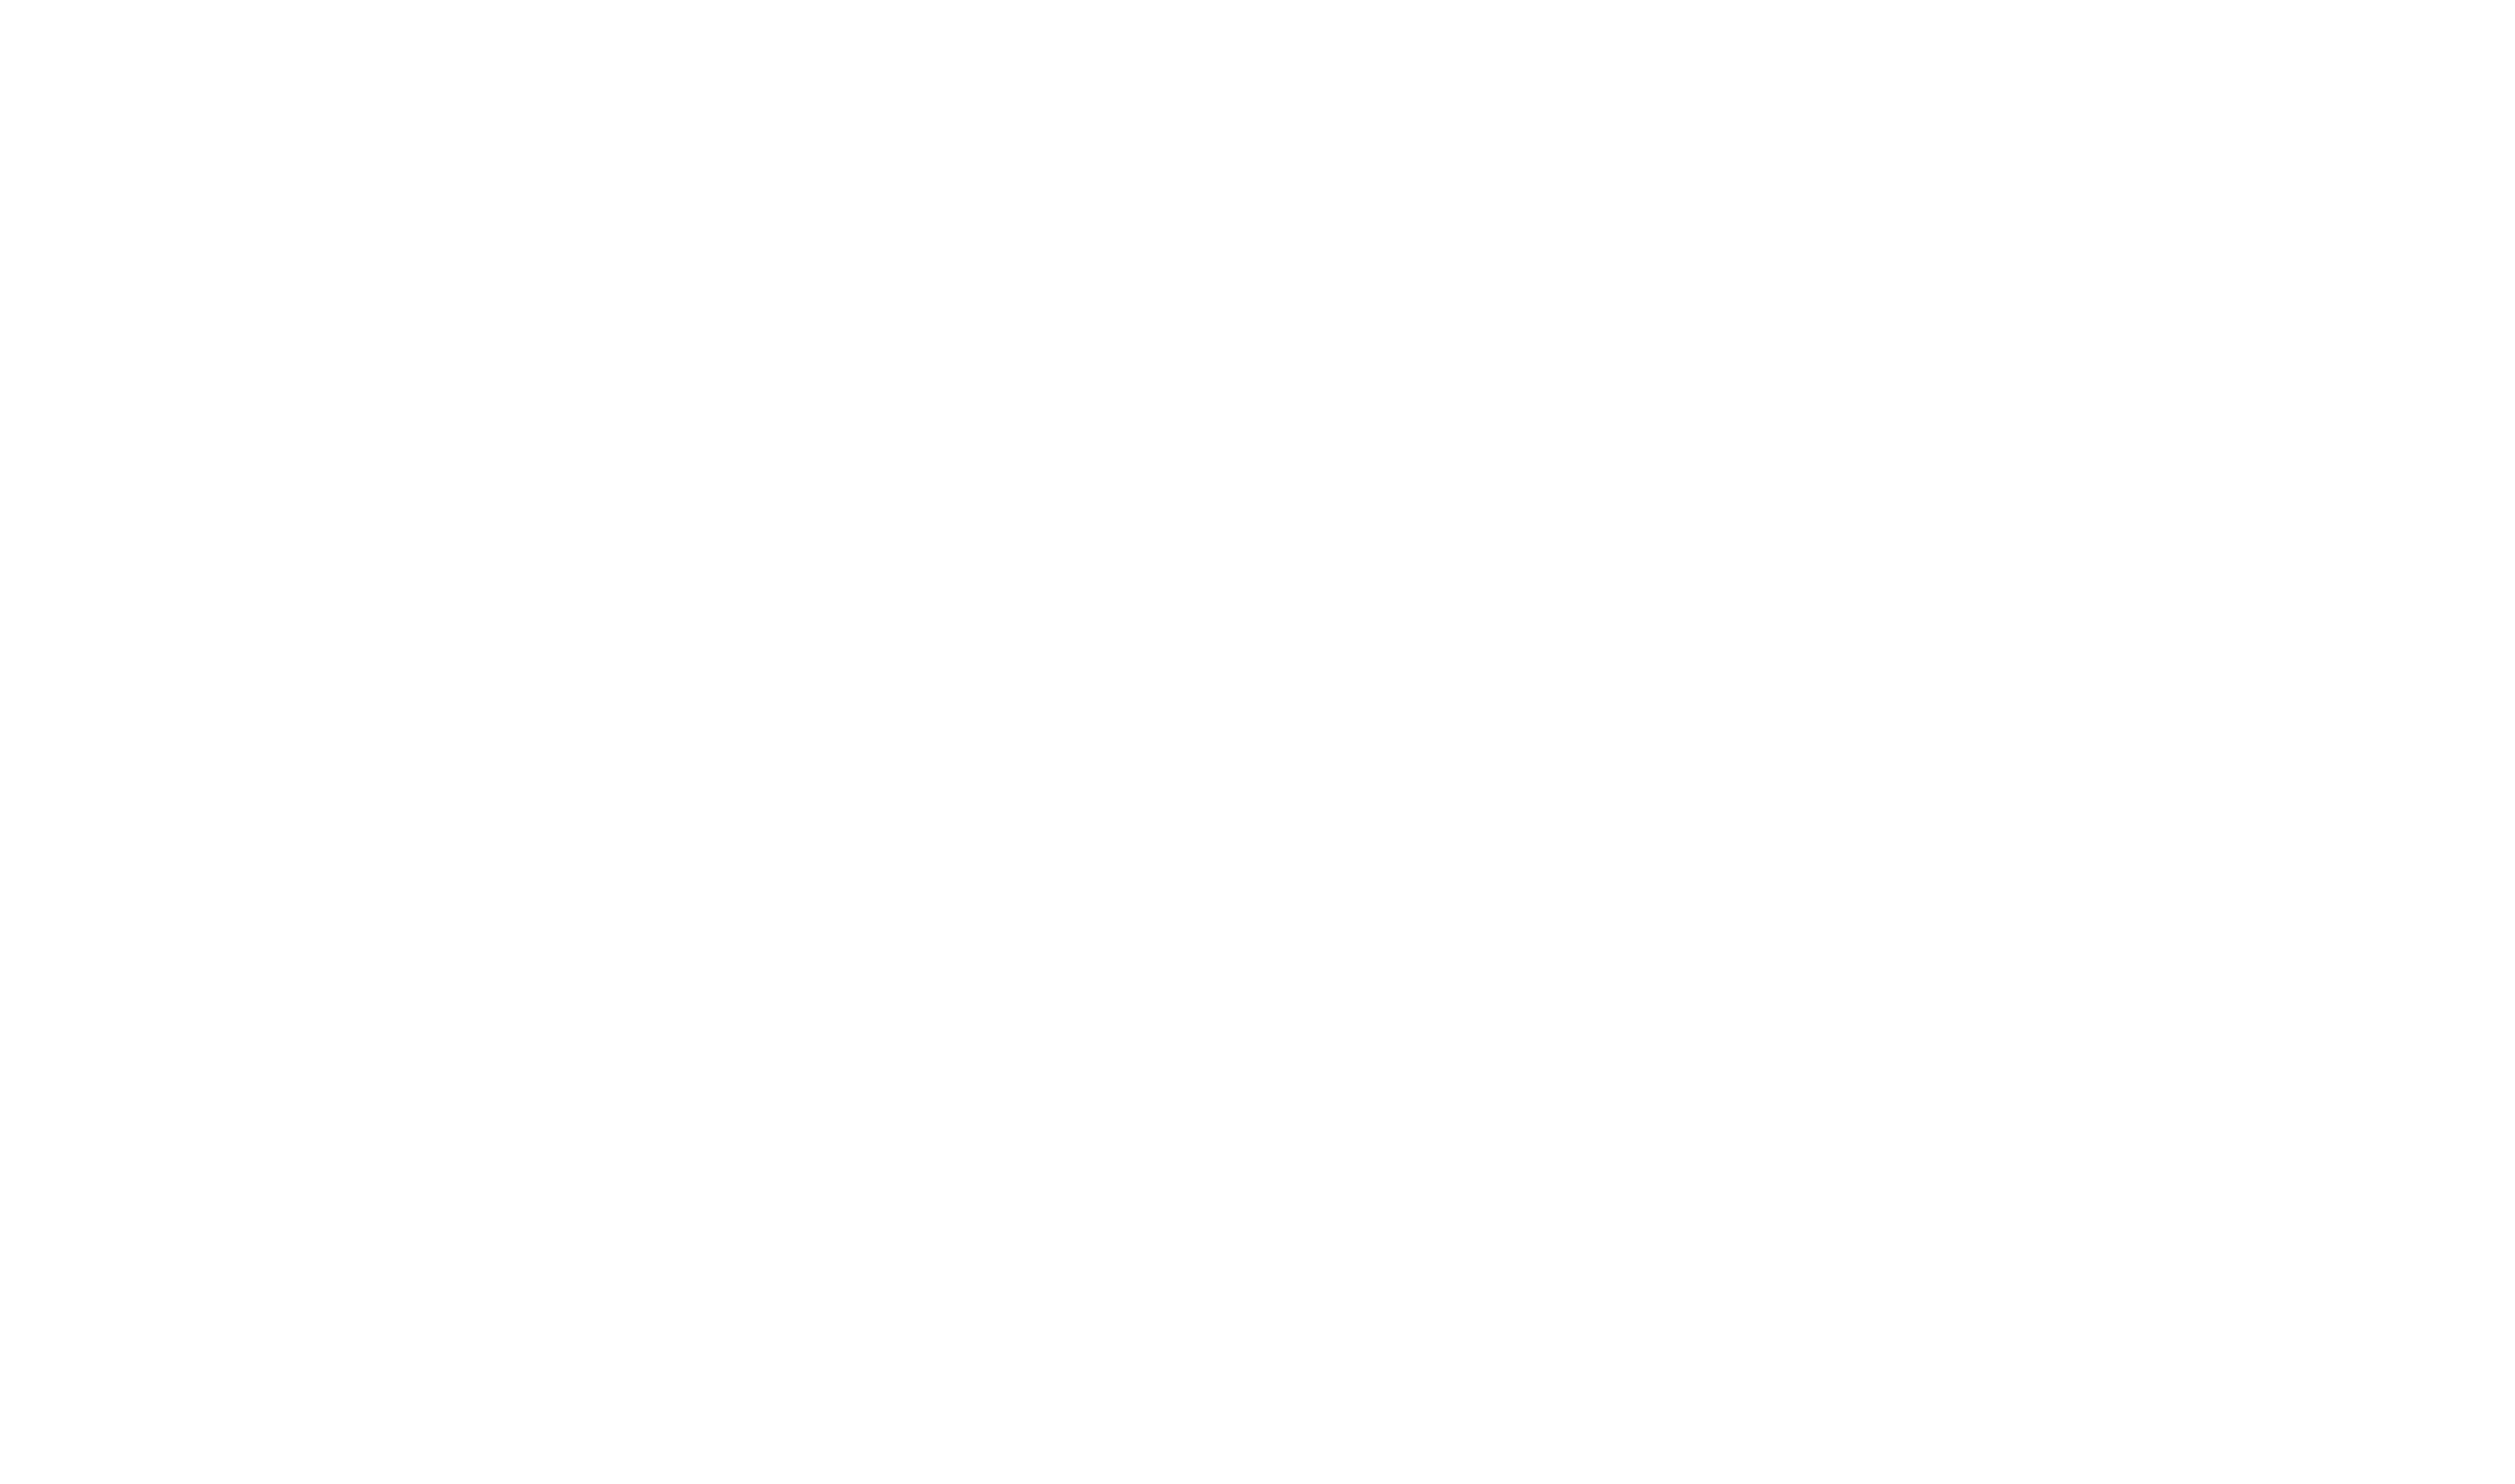 DutchBasecamp